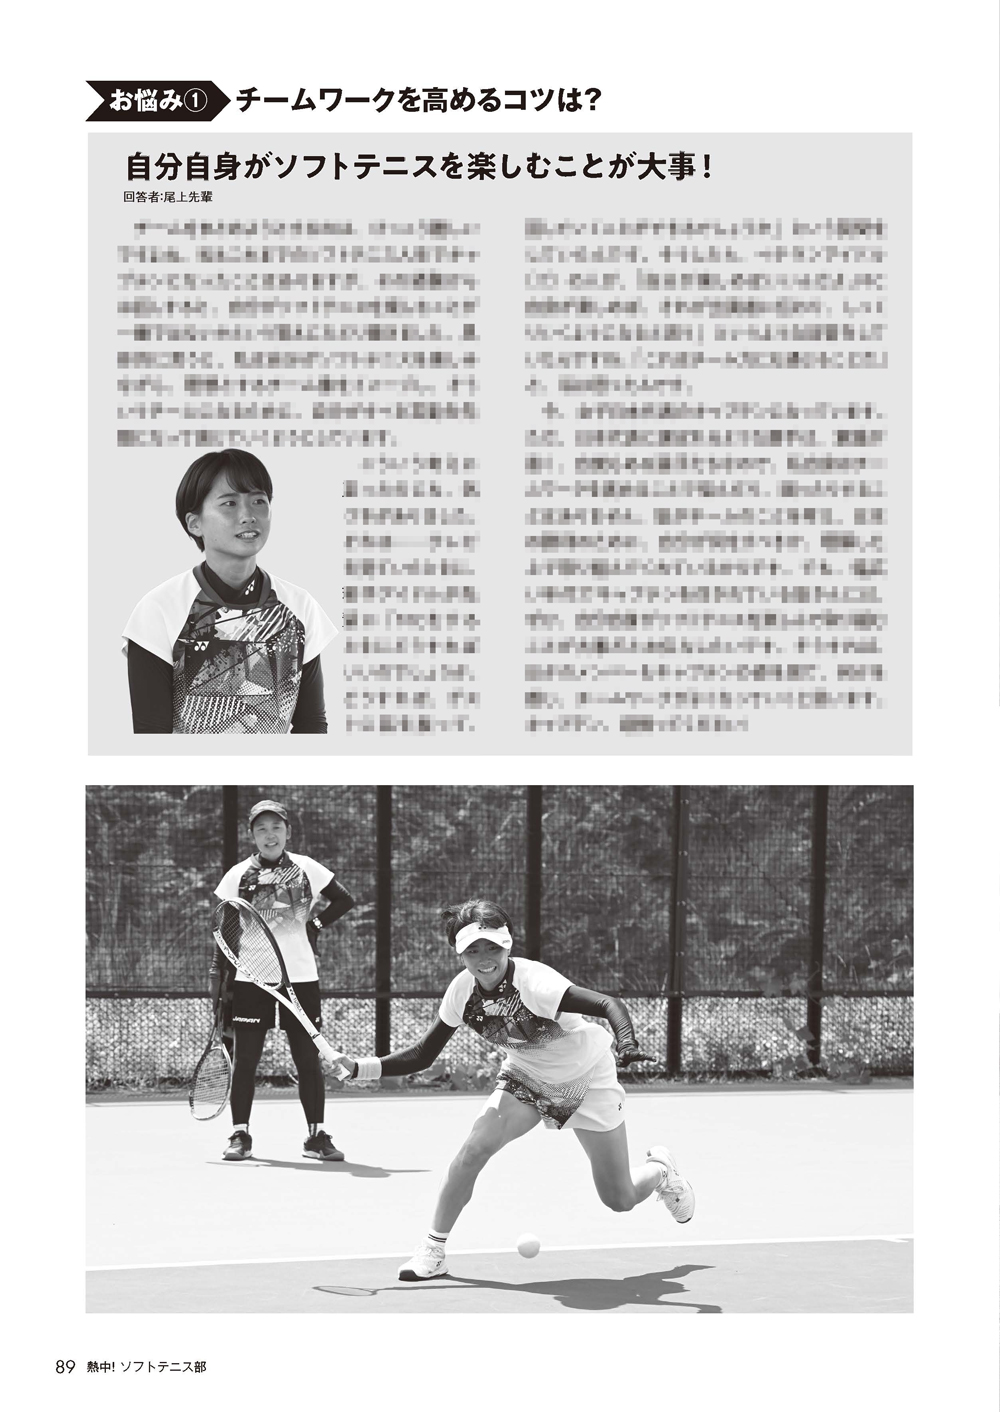 熱中!ソフトテニス部Vol.53